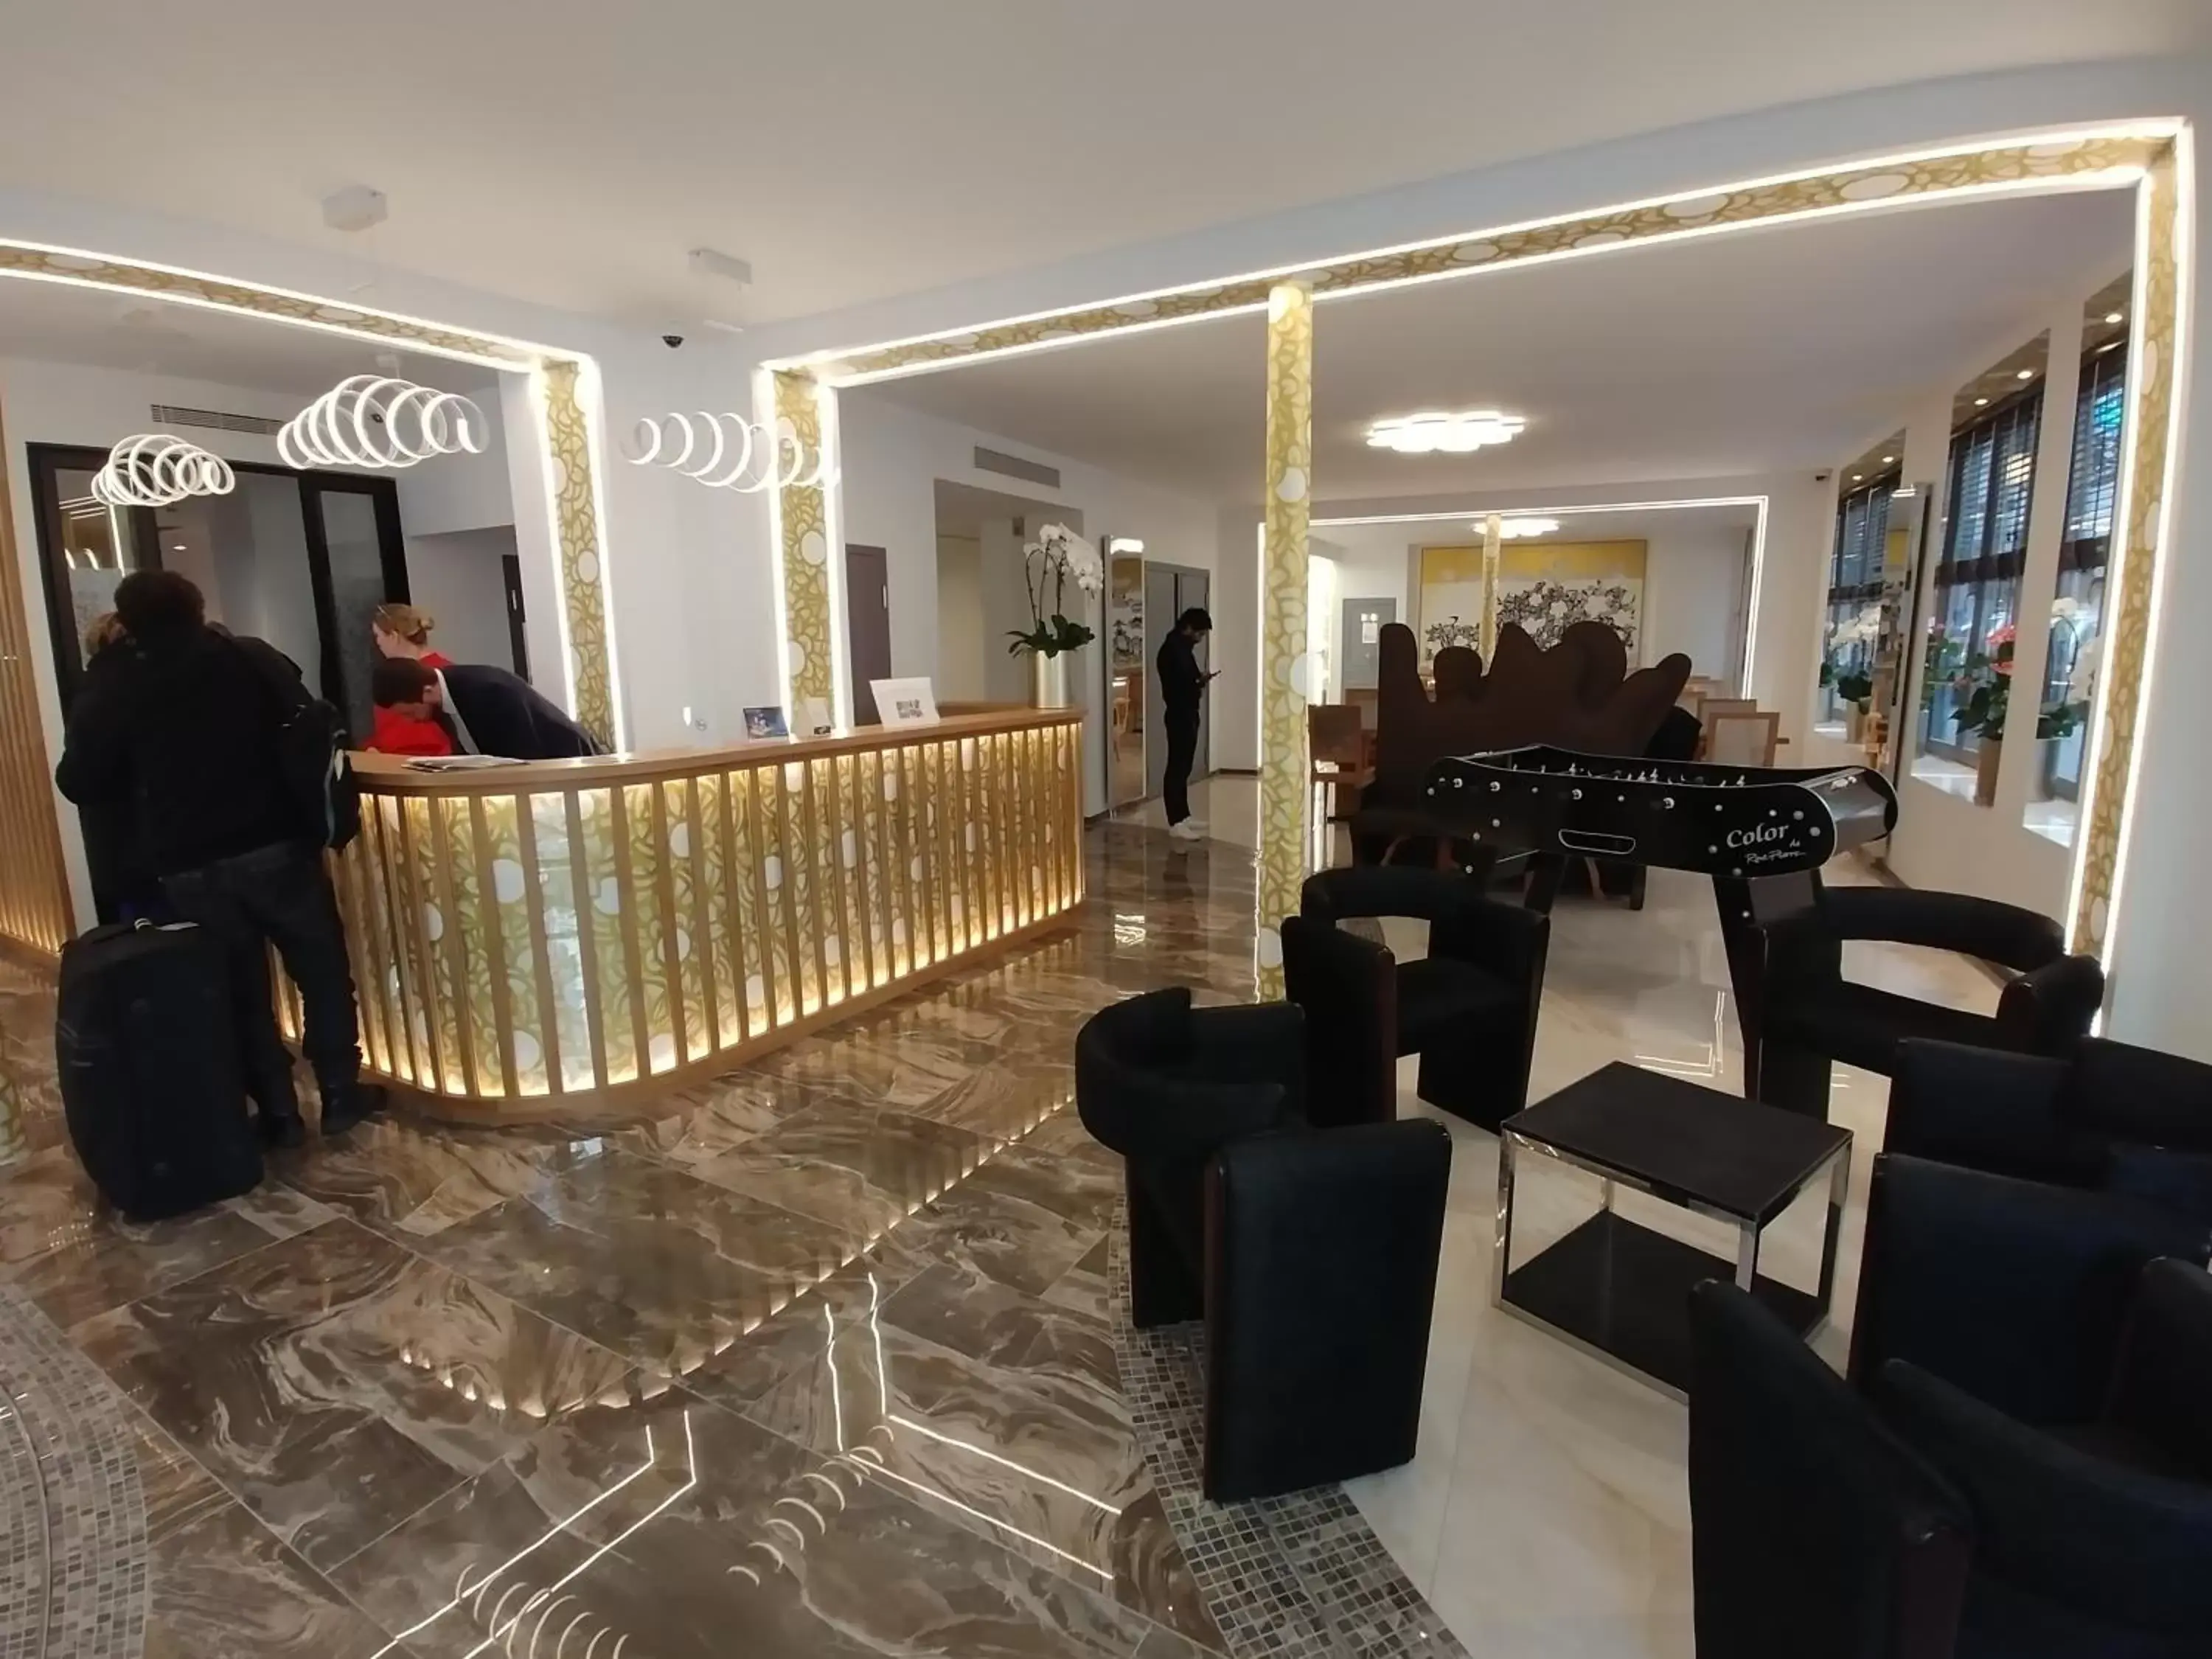 Lobby or reception, Lobby/Reception in Hotel Aida Opera